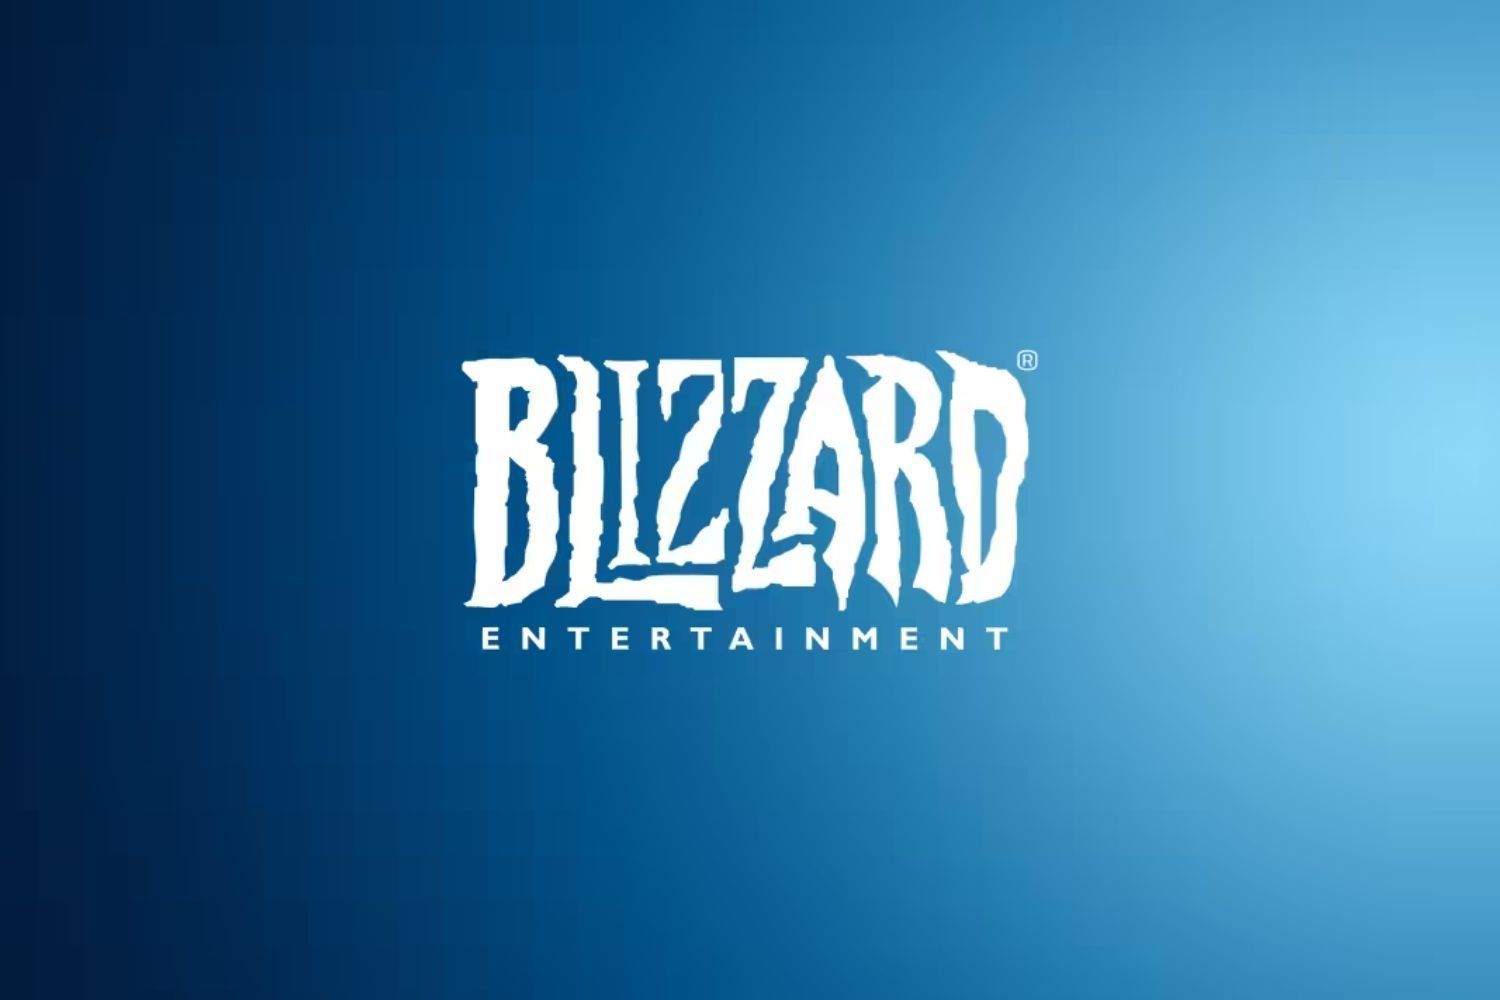 Une nouvelle présidente remplace Mike Ybarra à la tête de Blizzard